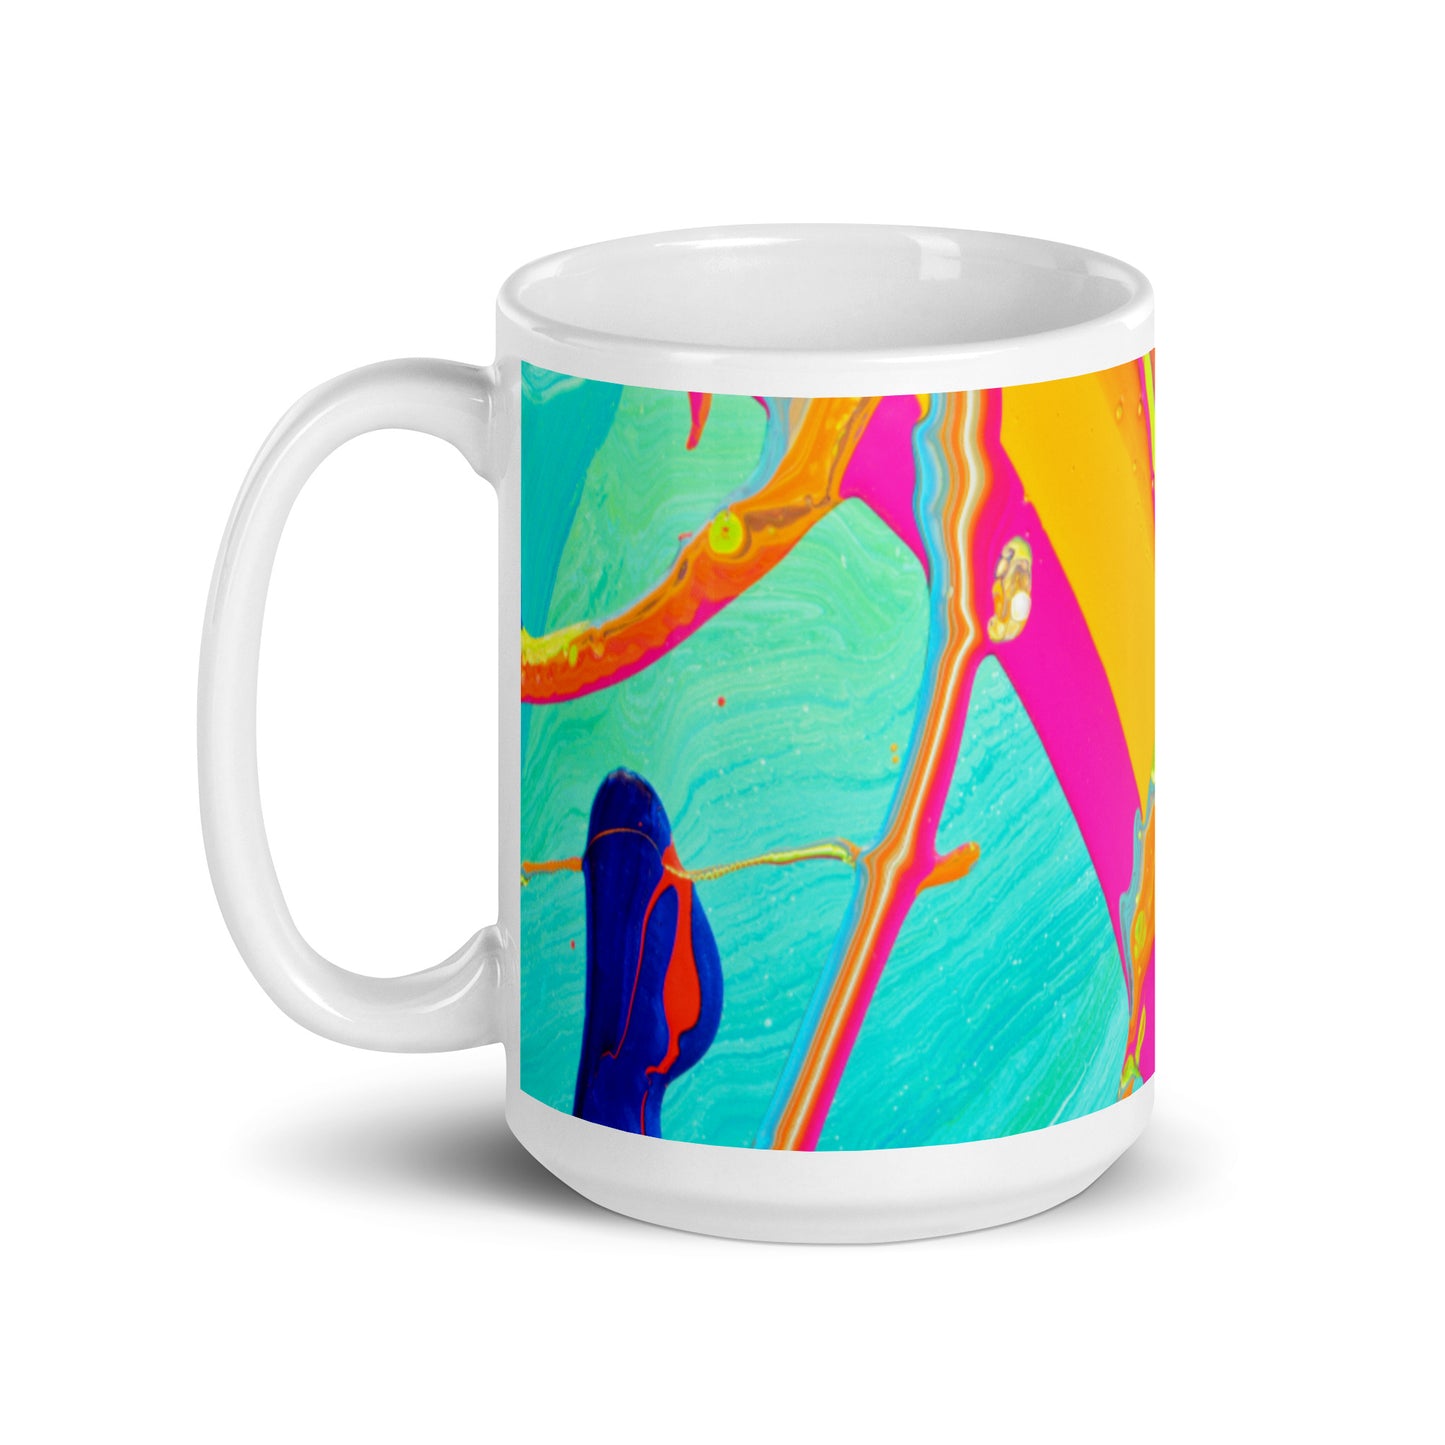 White glossy mug - Rainbow design